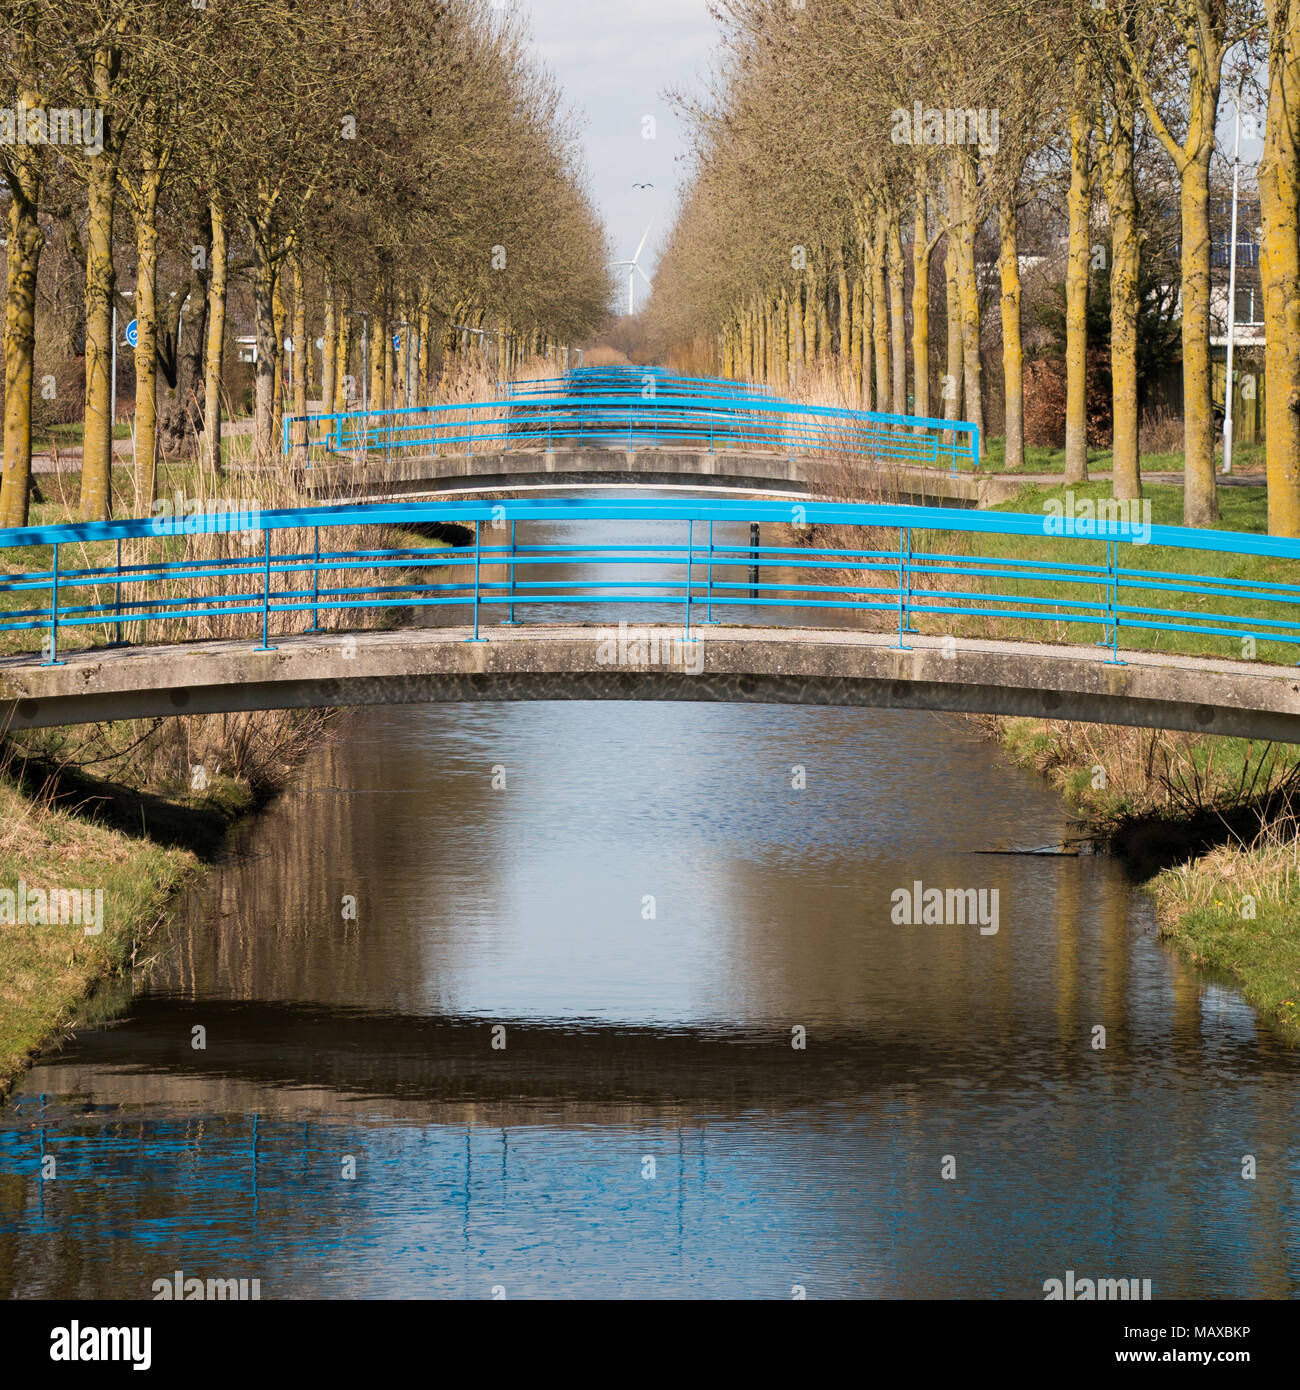 Alineado puentes sobre un canal holandés, con una turbina de viento en el fondo. Foto de stock